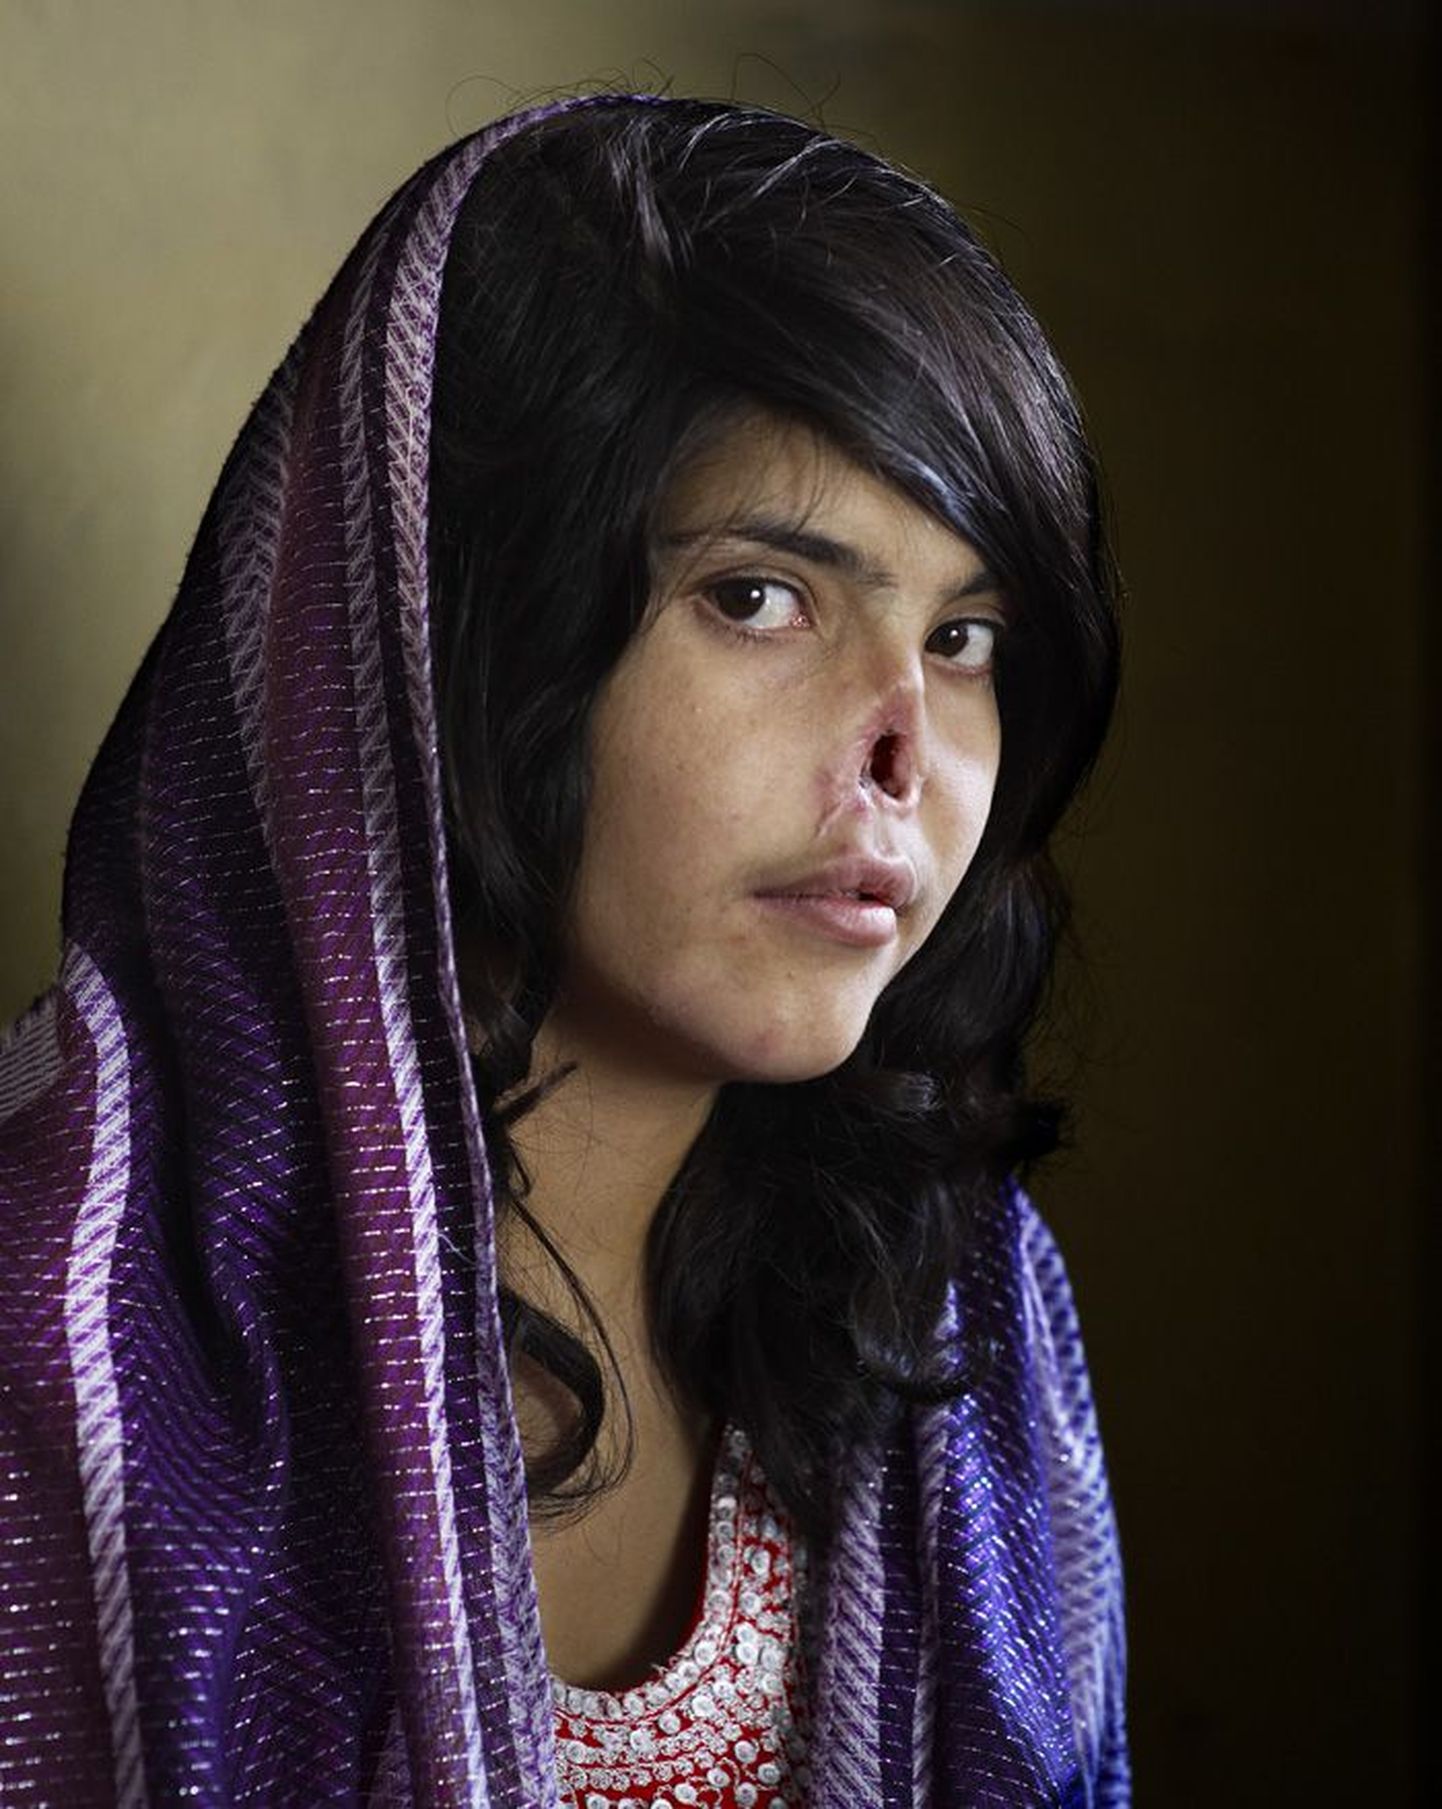 Aasta foto 2010. Afganistani naine Bibi Aisha põgenes oma vägivaldse abikaasa eest vanematekoju. Talibani võitlejad mõistsid ta üle kohut, karistuseks lõikasid Bibi mees ja mehevend ära naise nina ning kõrvad. Hüljatud naise päästsid humanitaarabitöötajad ja Ameerika sõjaväelased. Praegu elab Bibi USAs.